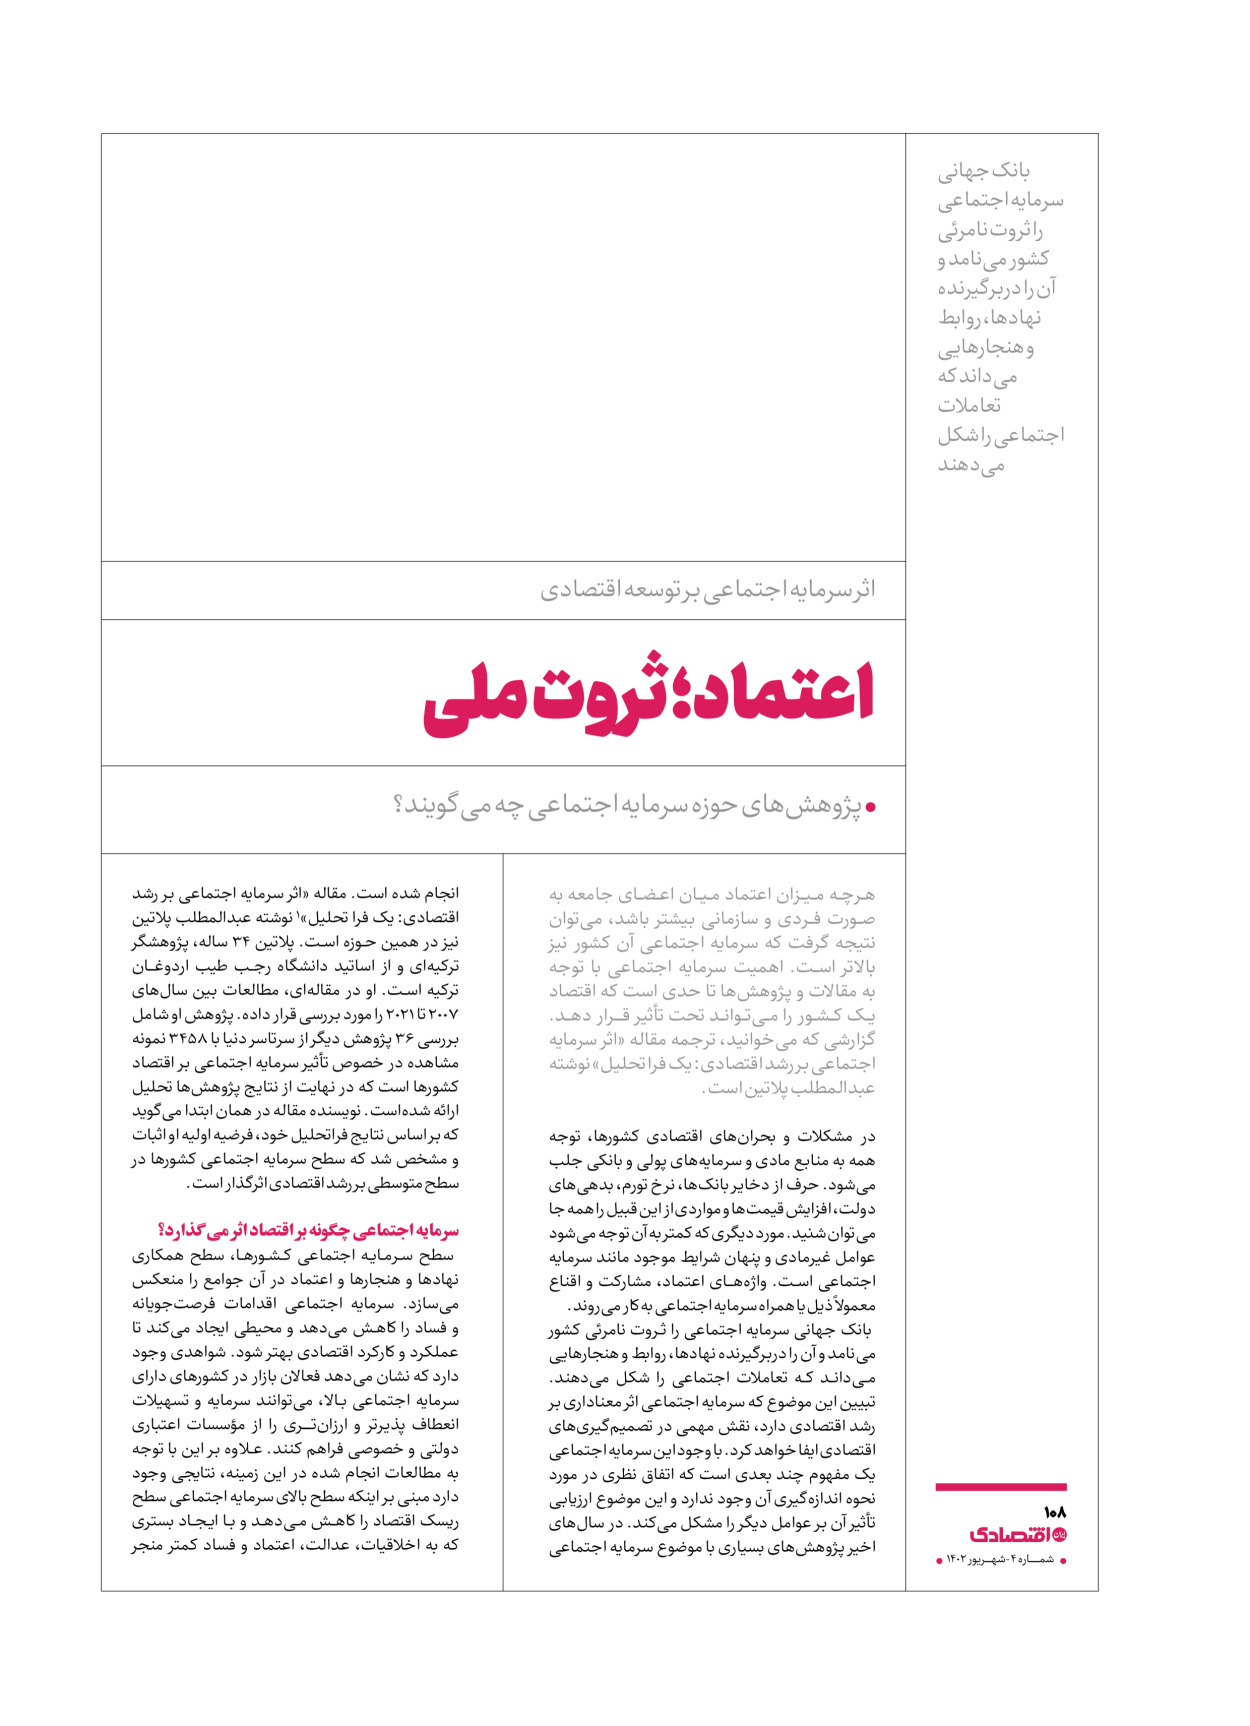 روزنامه ایران اقتصادی - ویژه نامه اقتصادی۴ - ۰۴ شهریور ۱۴۰۲ - صفحه ۱۰۸